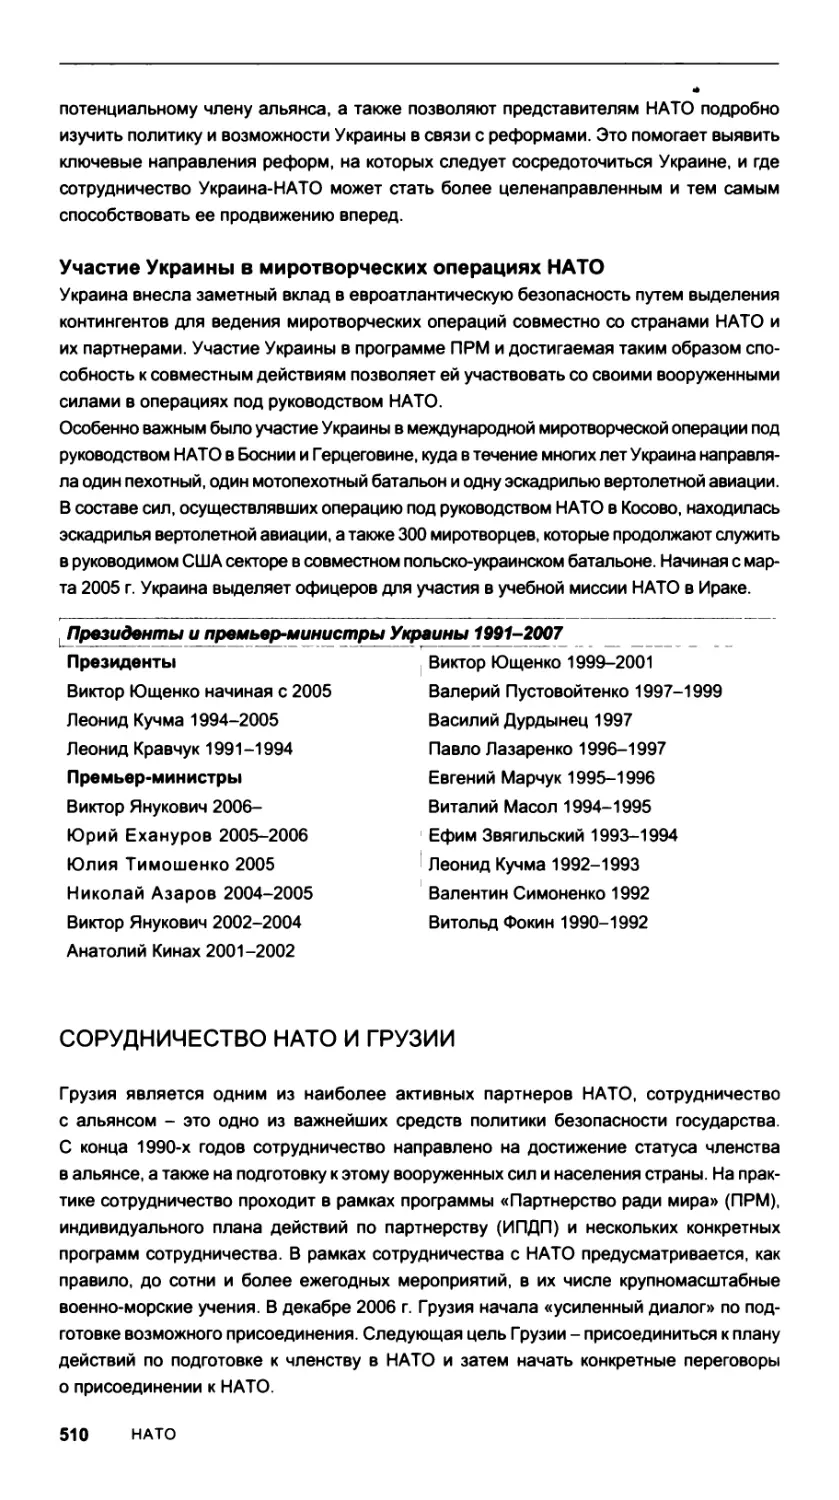 Участие Украины в миротворческих операциях НАТО
Сорудничество НАТО и Грузии